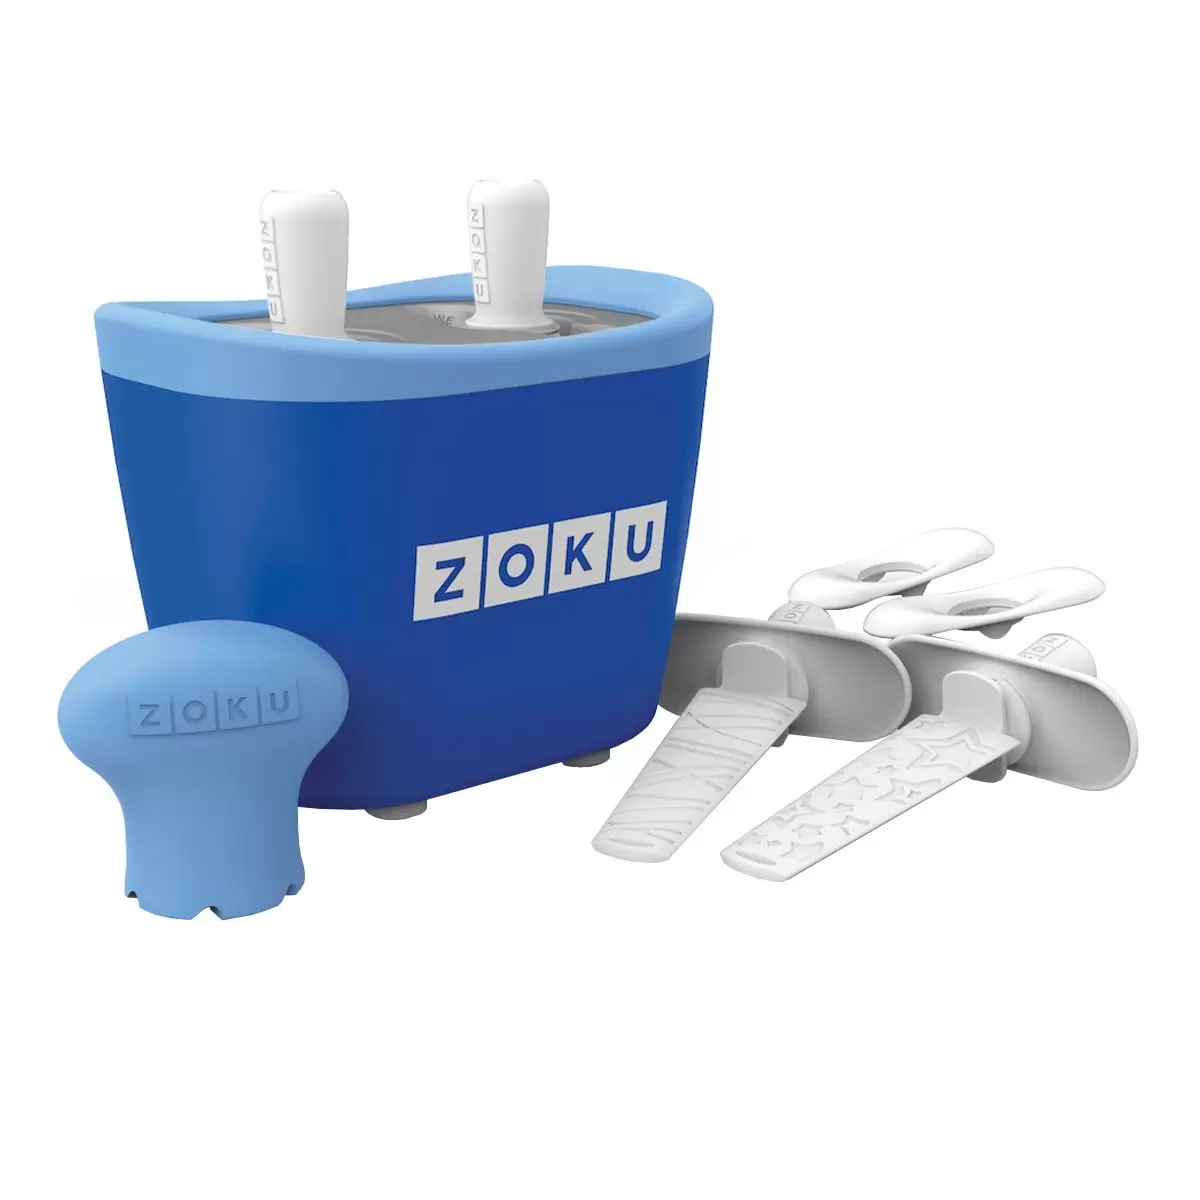 ZOKU 快速製冰棒機 兩支裝 藍色